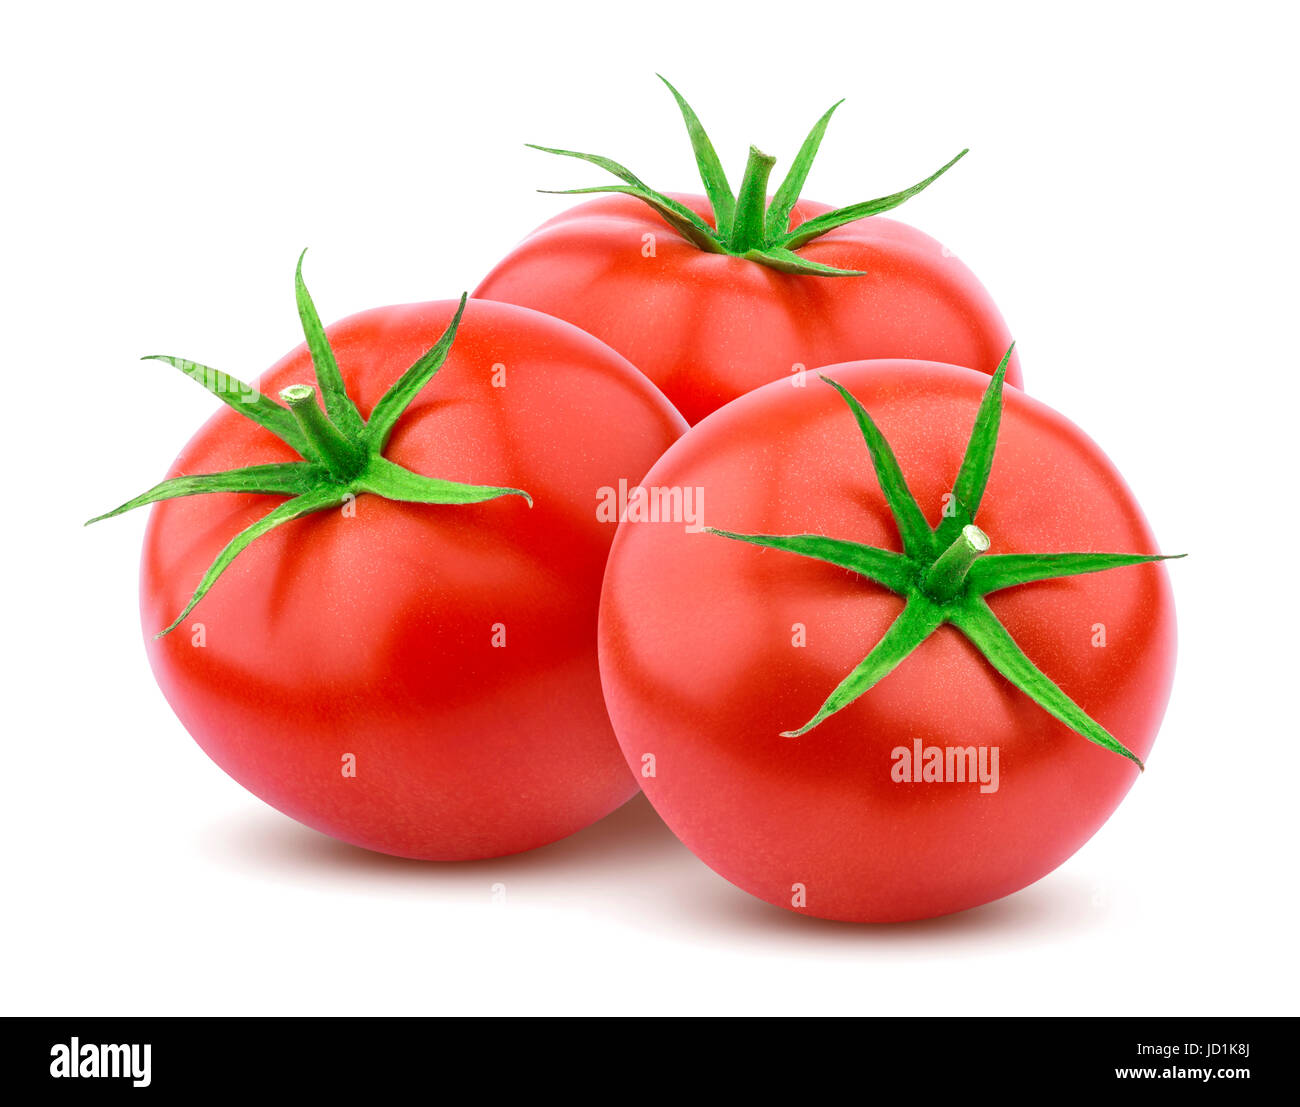 Whole tomato isolated on white background Stock Photo